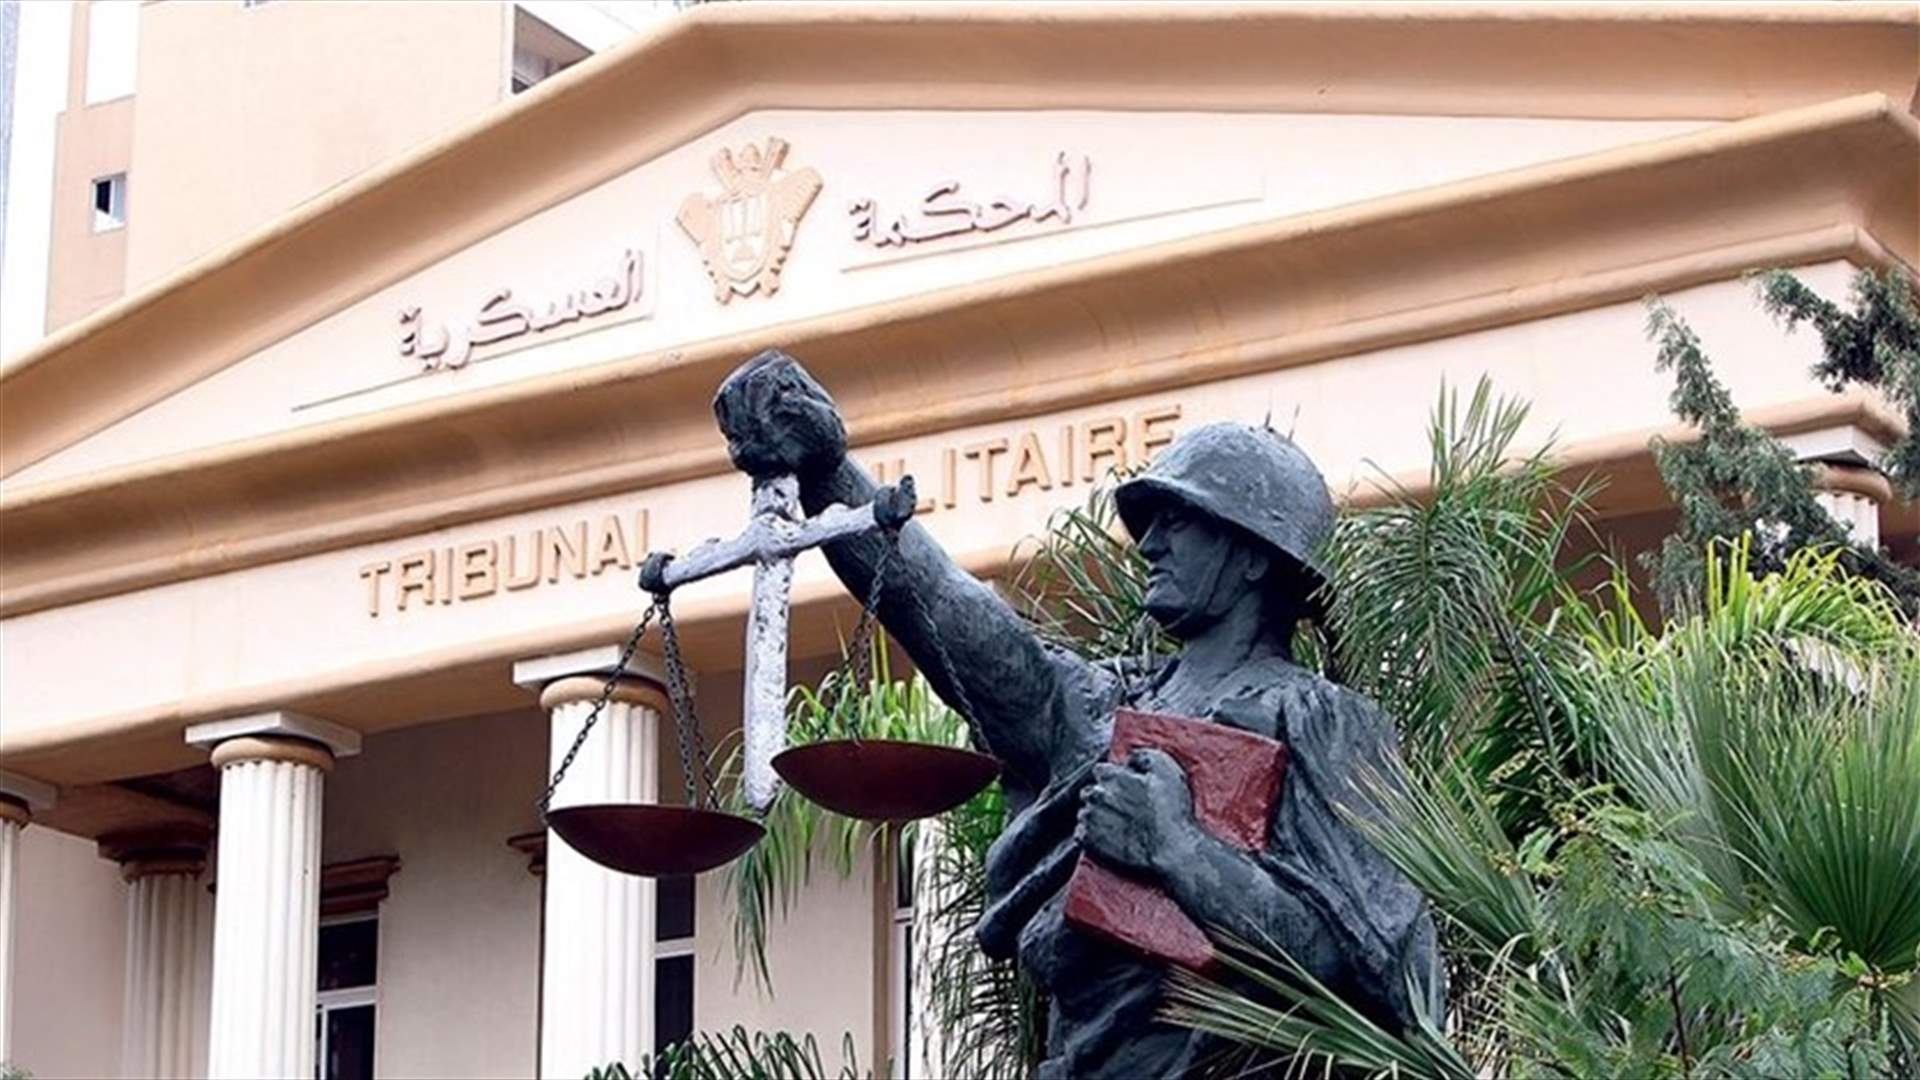 المحكمة العسكرية أنهت محاكمة مرافق القاضية غادة عون و4 آخرين